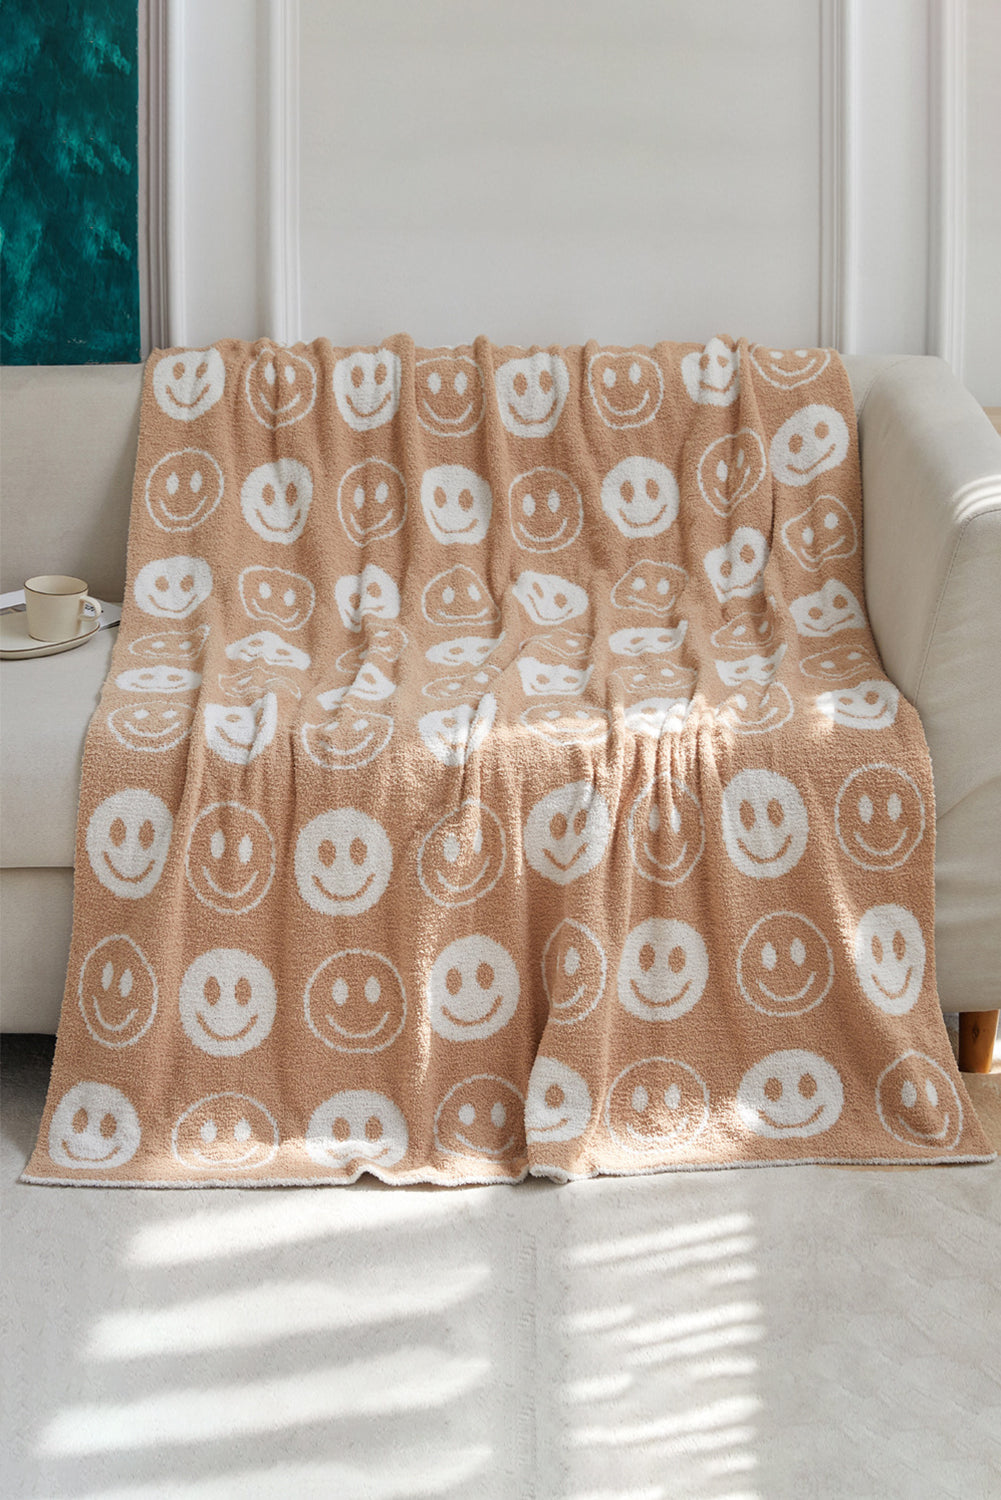 Beige 127x152cm Smile Flannel Fall Winter Blanket